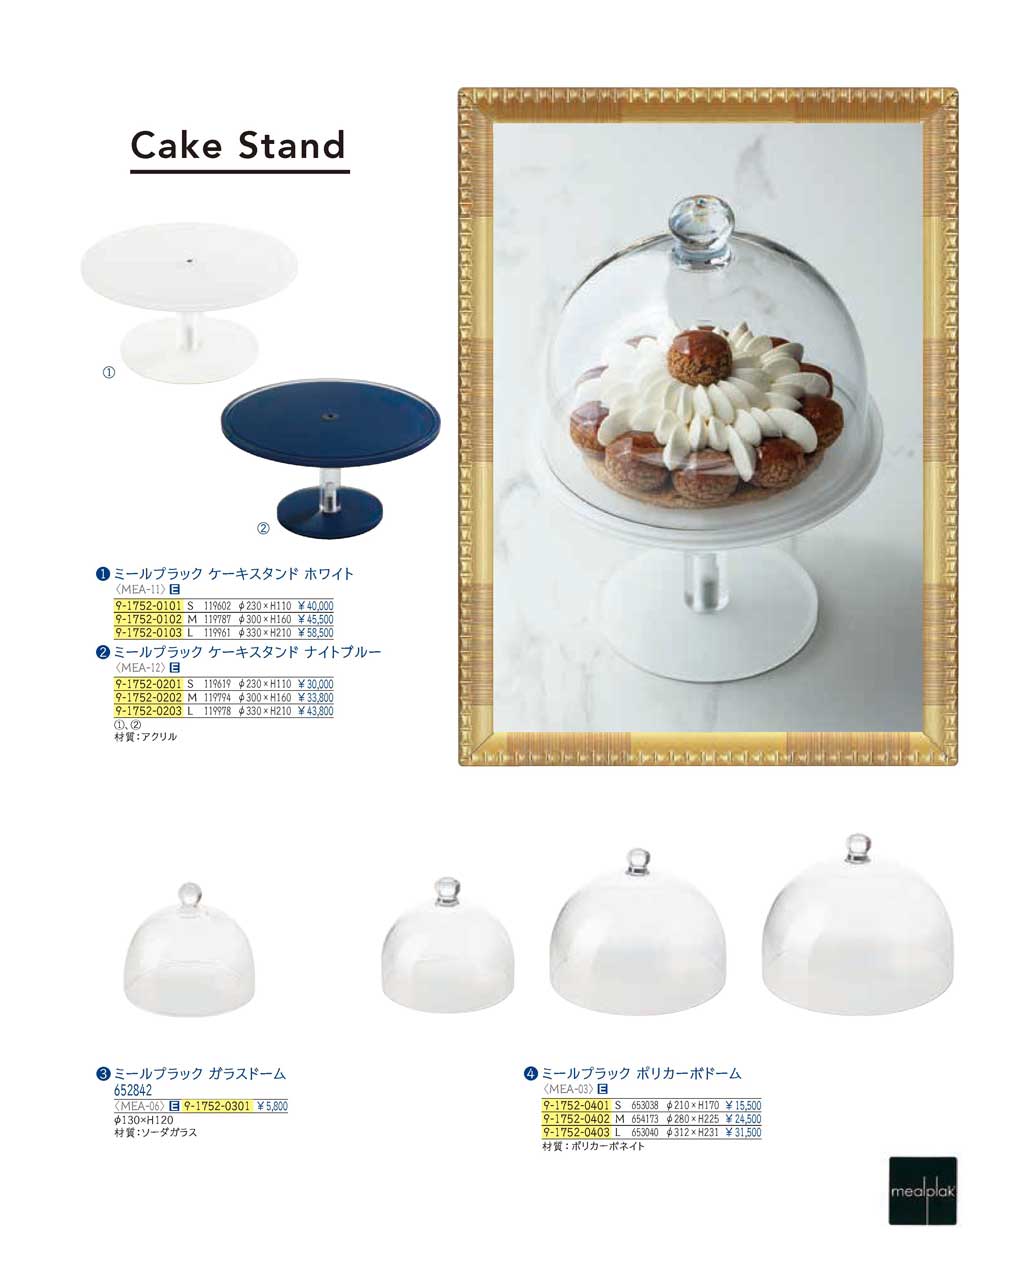 食器 ミールプラック・ケーキスタンドmealplak / Cake Stands